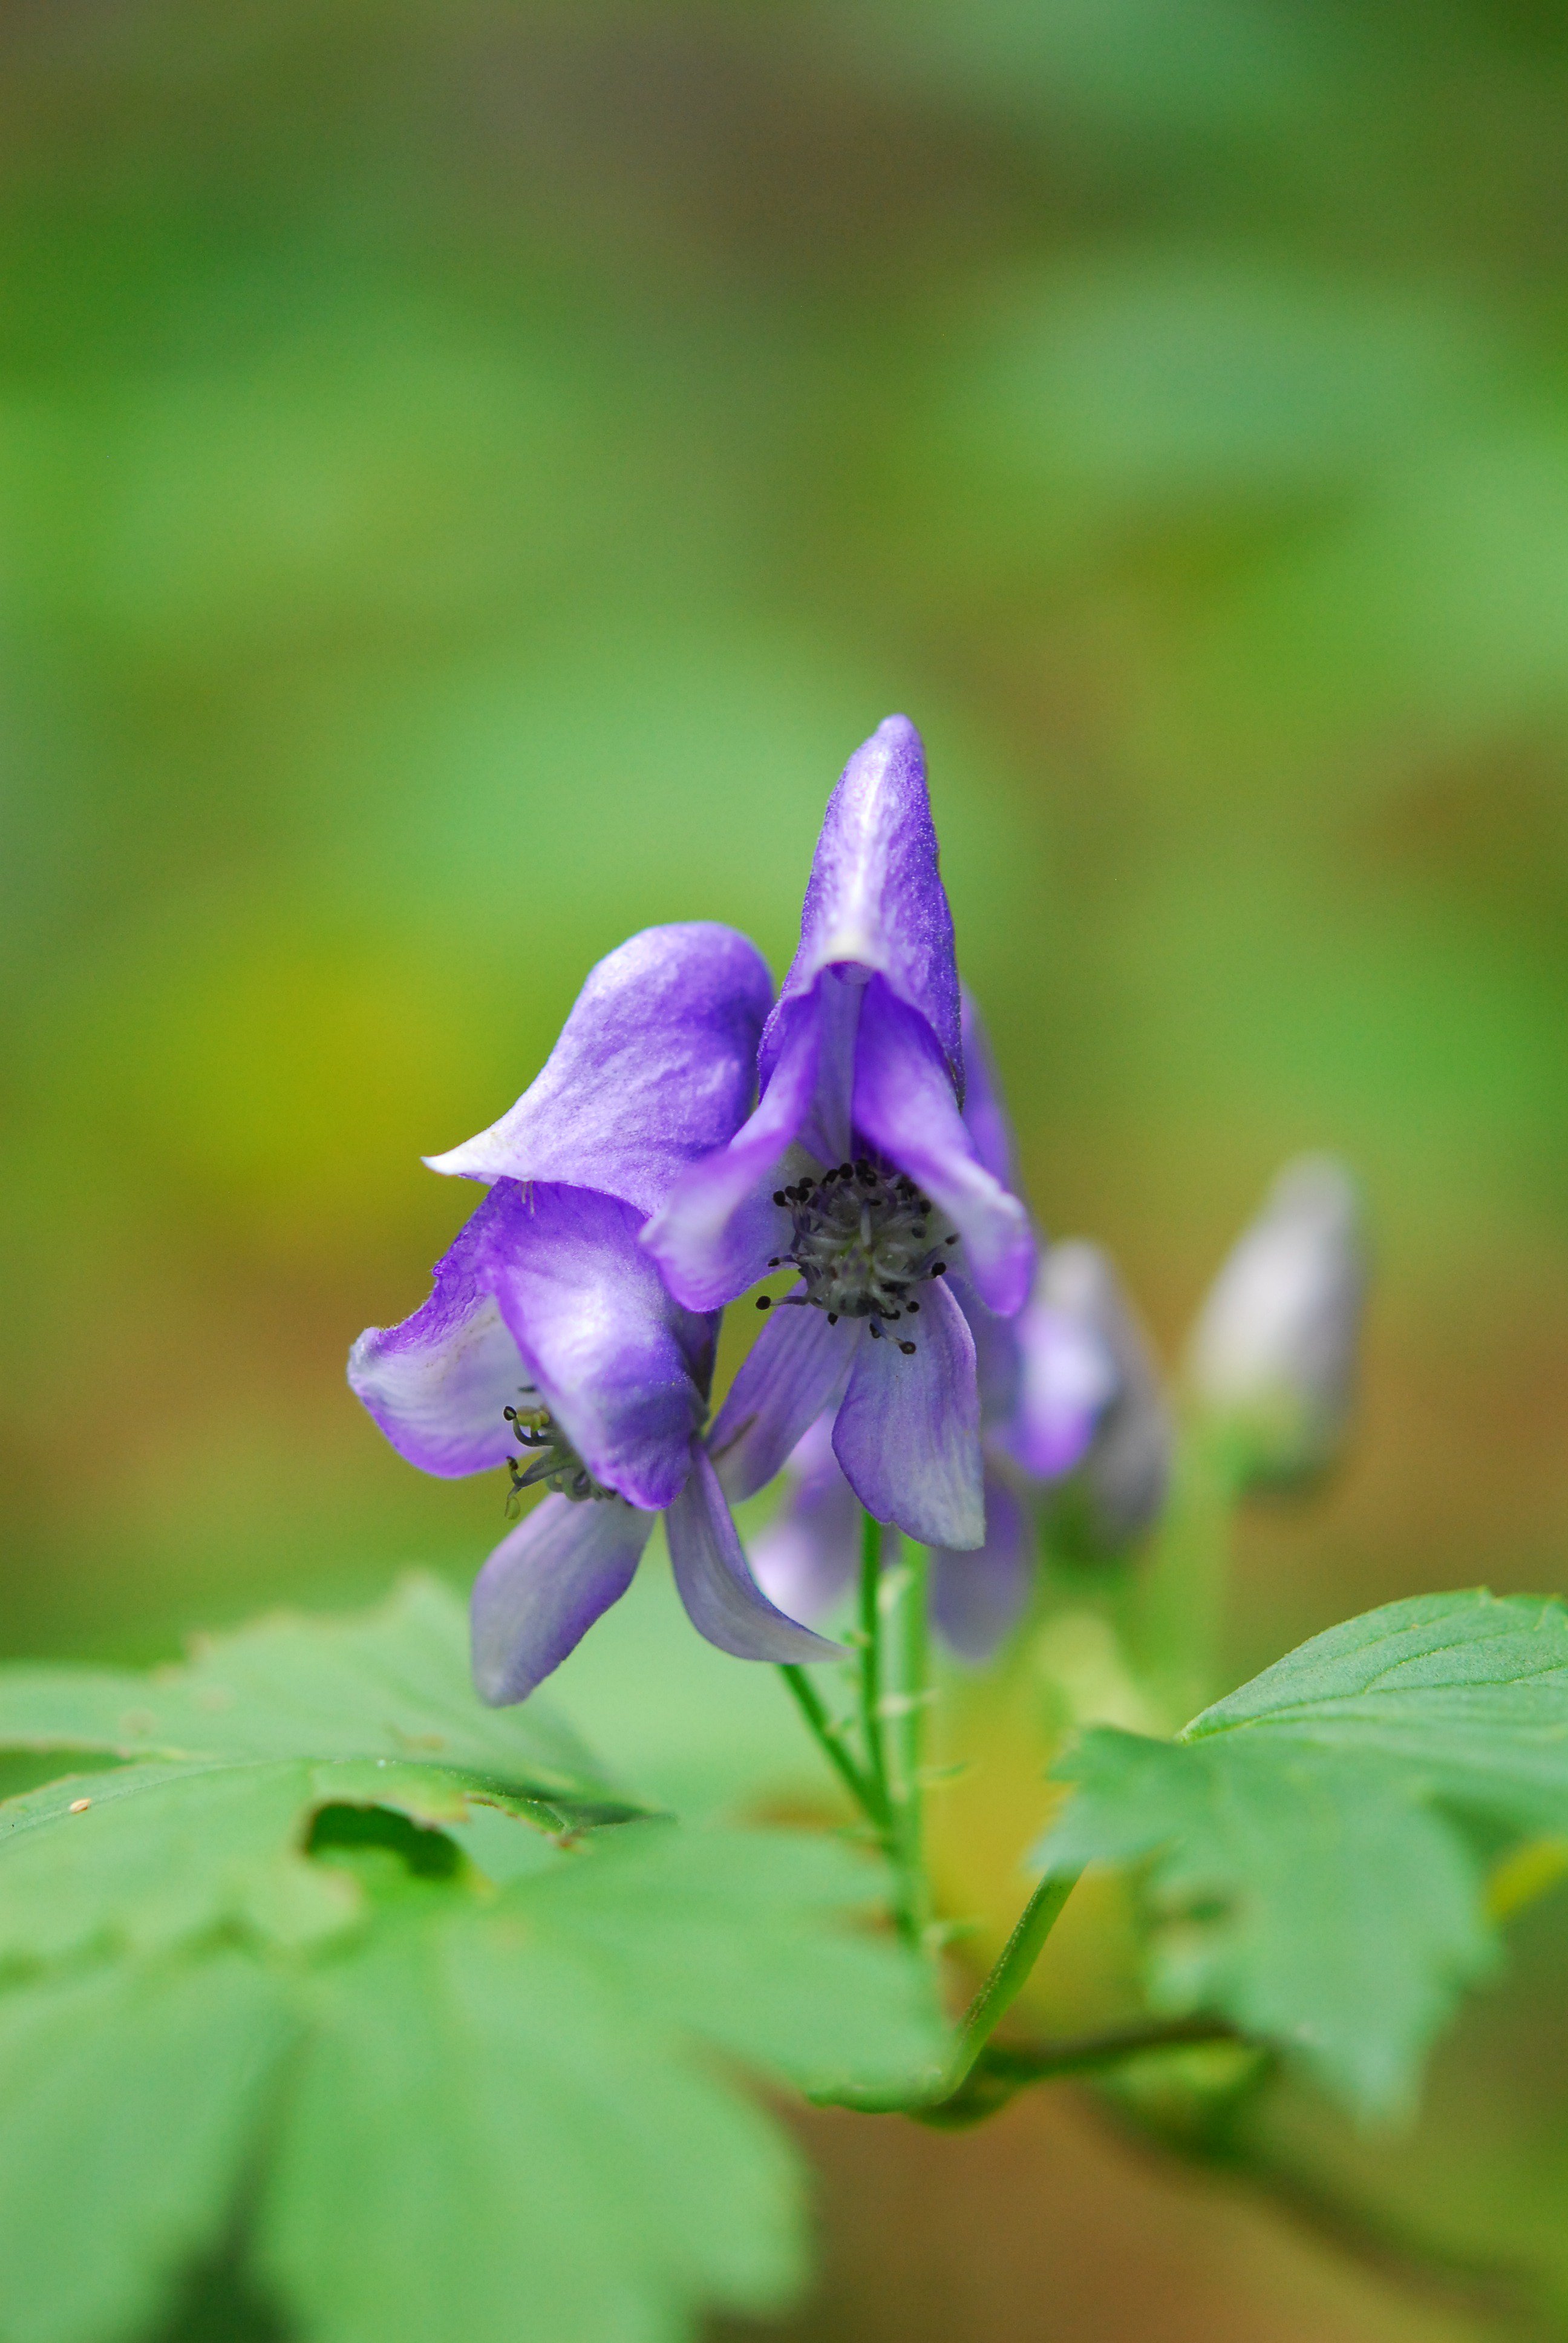 Tuwita 六甲高山植物園 A Tuwita ヤマトリカブト が咲き始めです 猛毒で有名なトリカブト その花は優美 優しい紫色 並んで咲いている姿がかわいいです T Co C2ouswpr6v